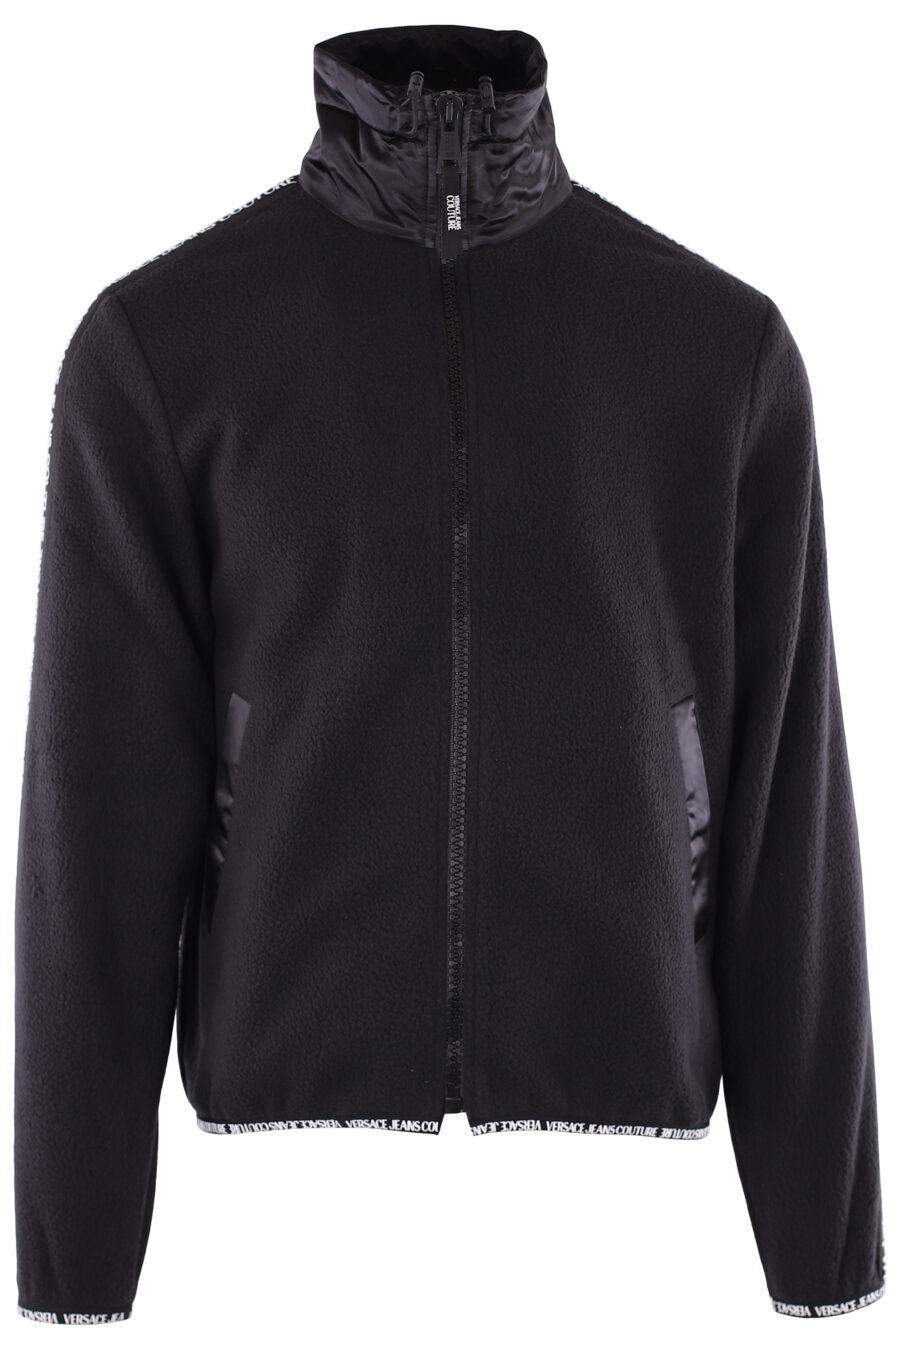 Schwarzes Fleece-Sweatshirt mit Schleifenlogo an den Ärmeln - IMG 6369